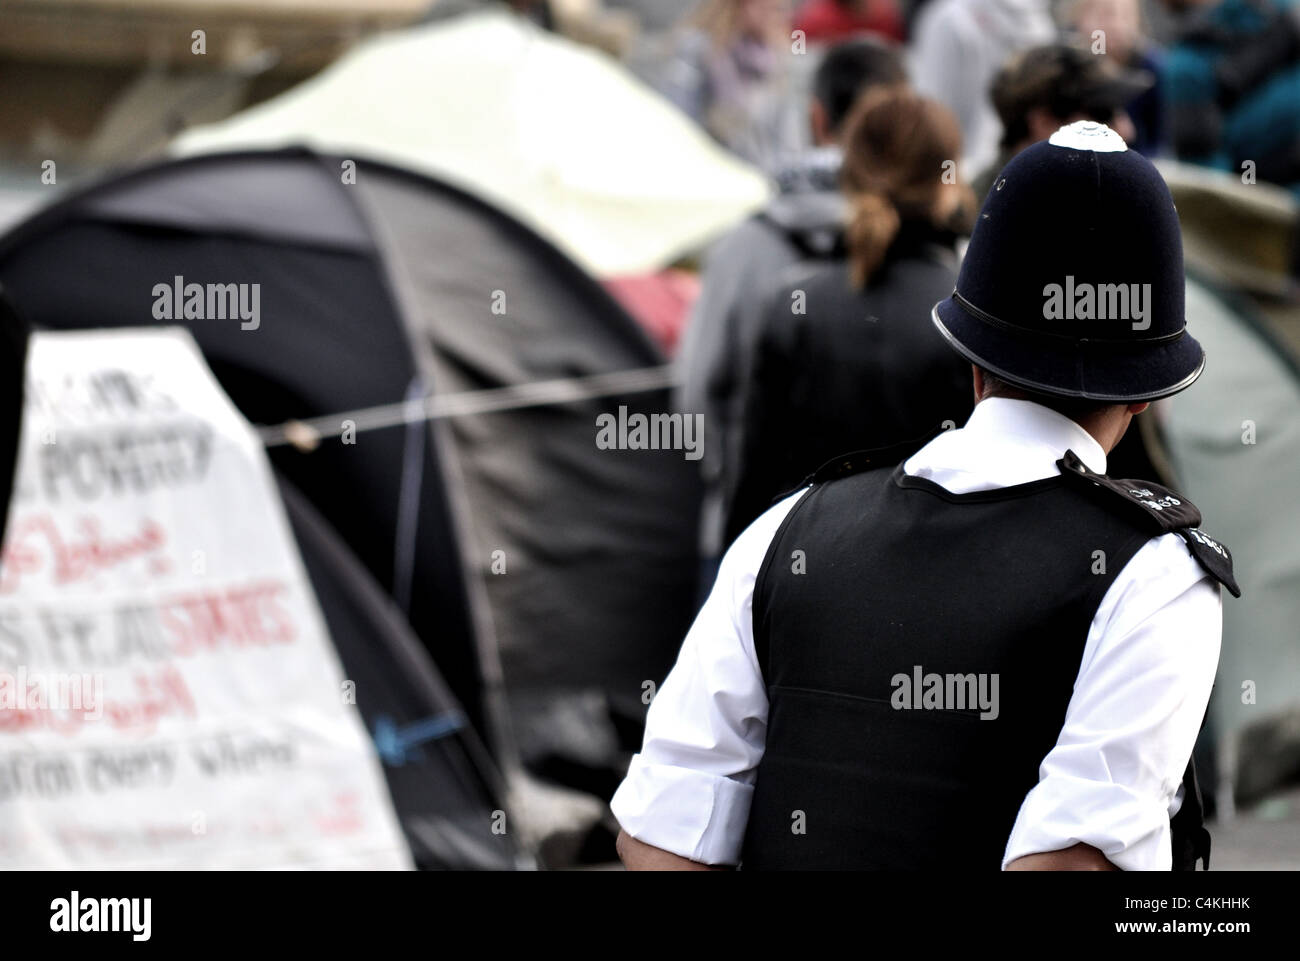 Fotos von 2011 1. kann Tag der internationalen Arbeiter-März, Rallye und späteren Beruf des Trafalgar Square. Stockfoto